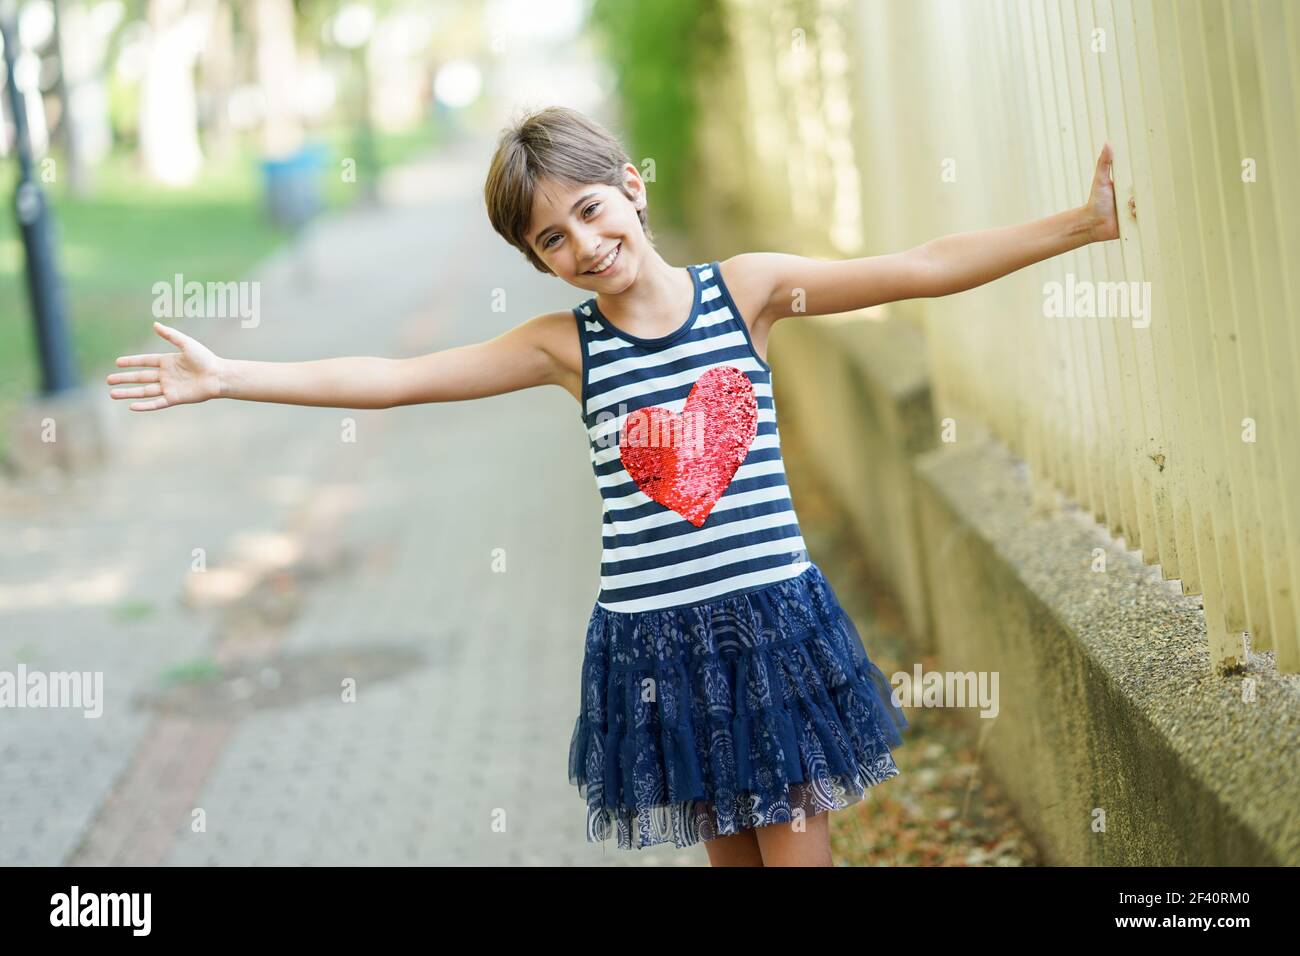 Little girl, eight years old, having fun in an urban park.. Little girl, eight years old, having fun outdoors. Stock Photo